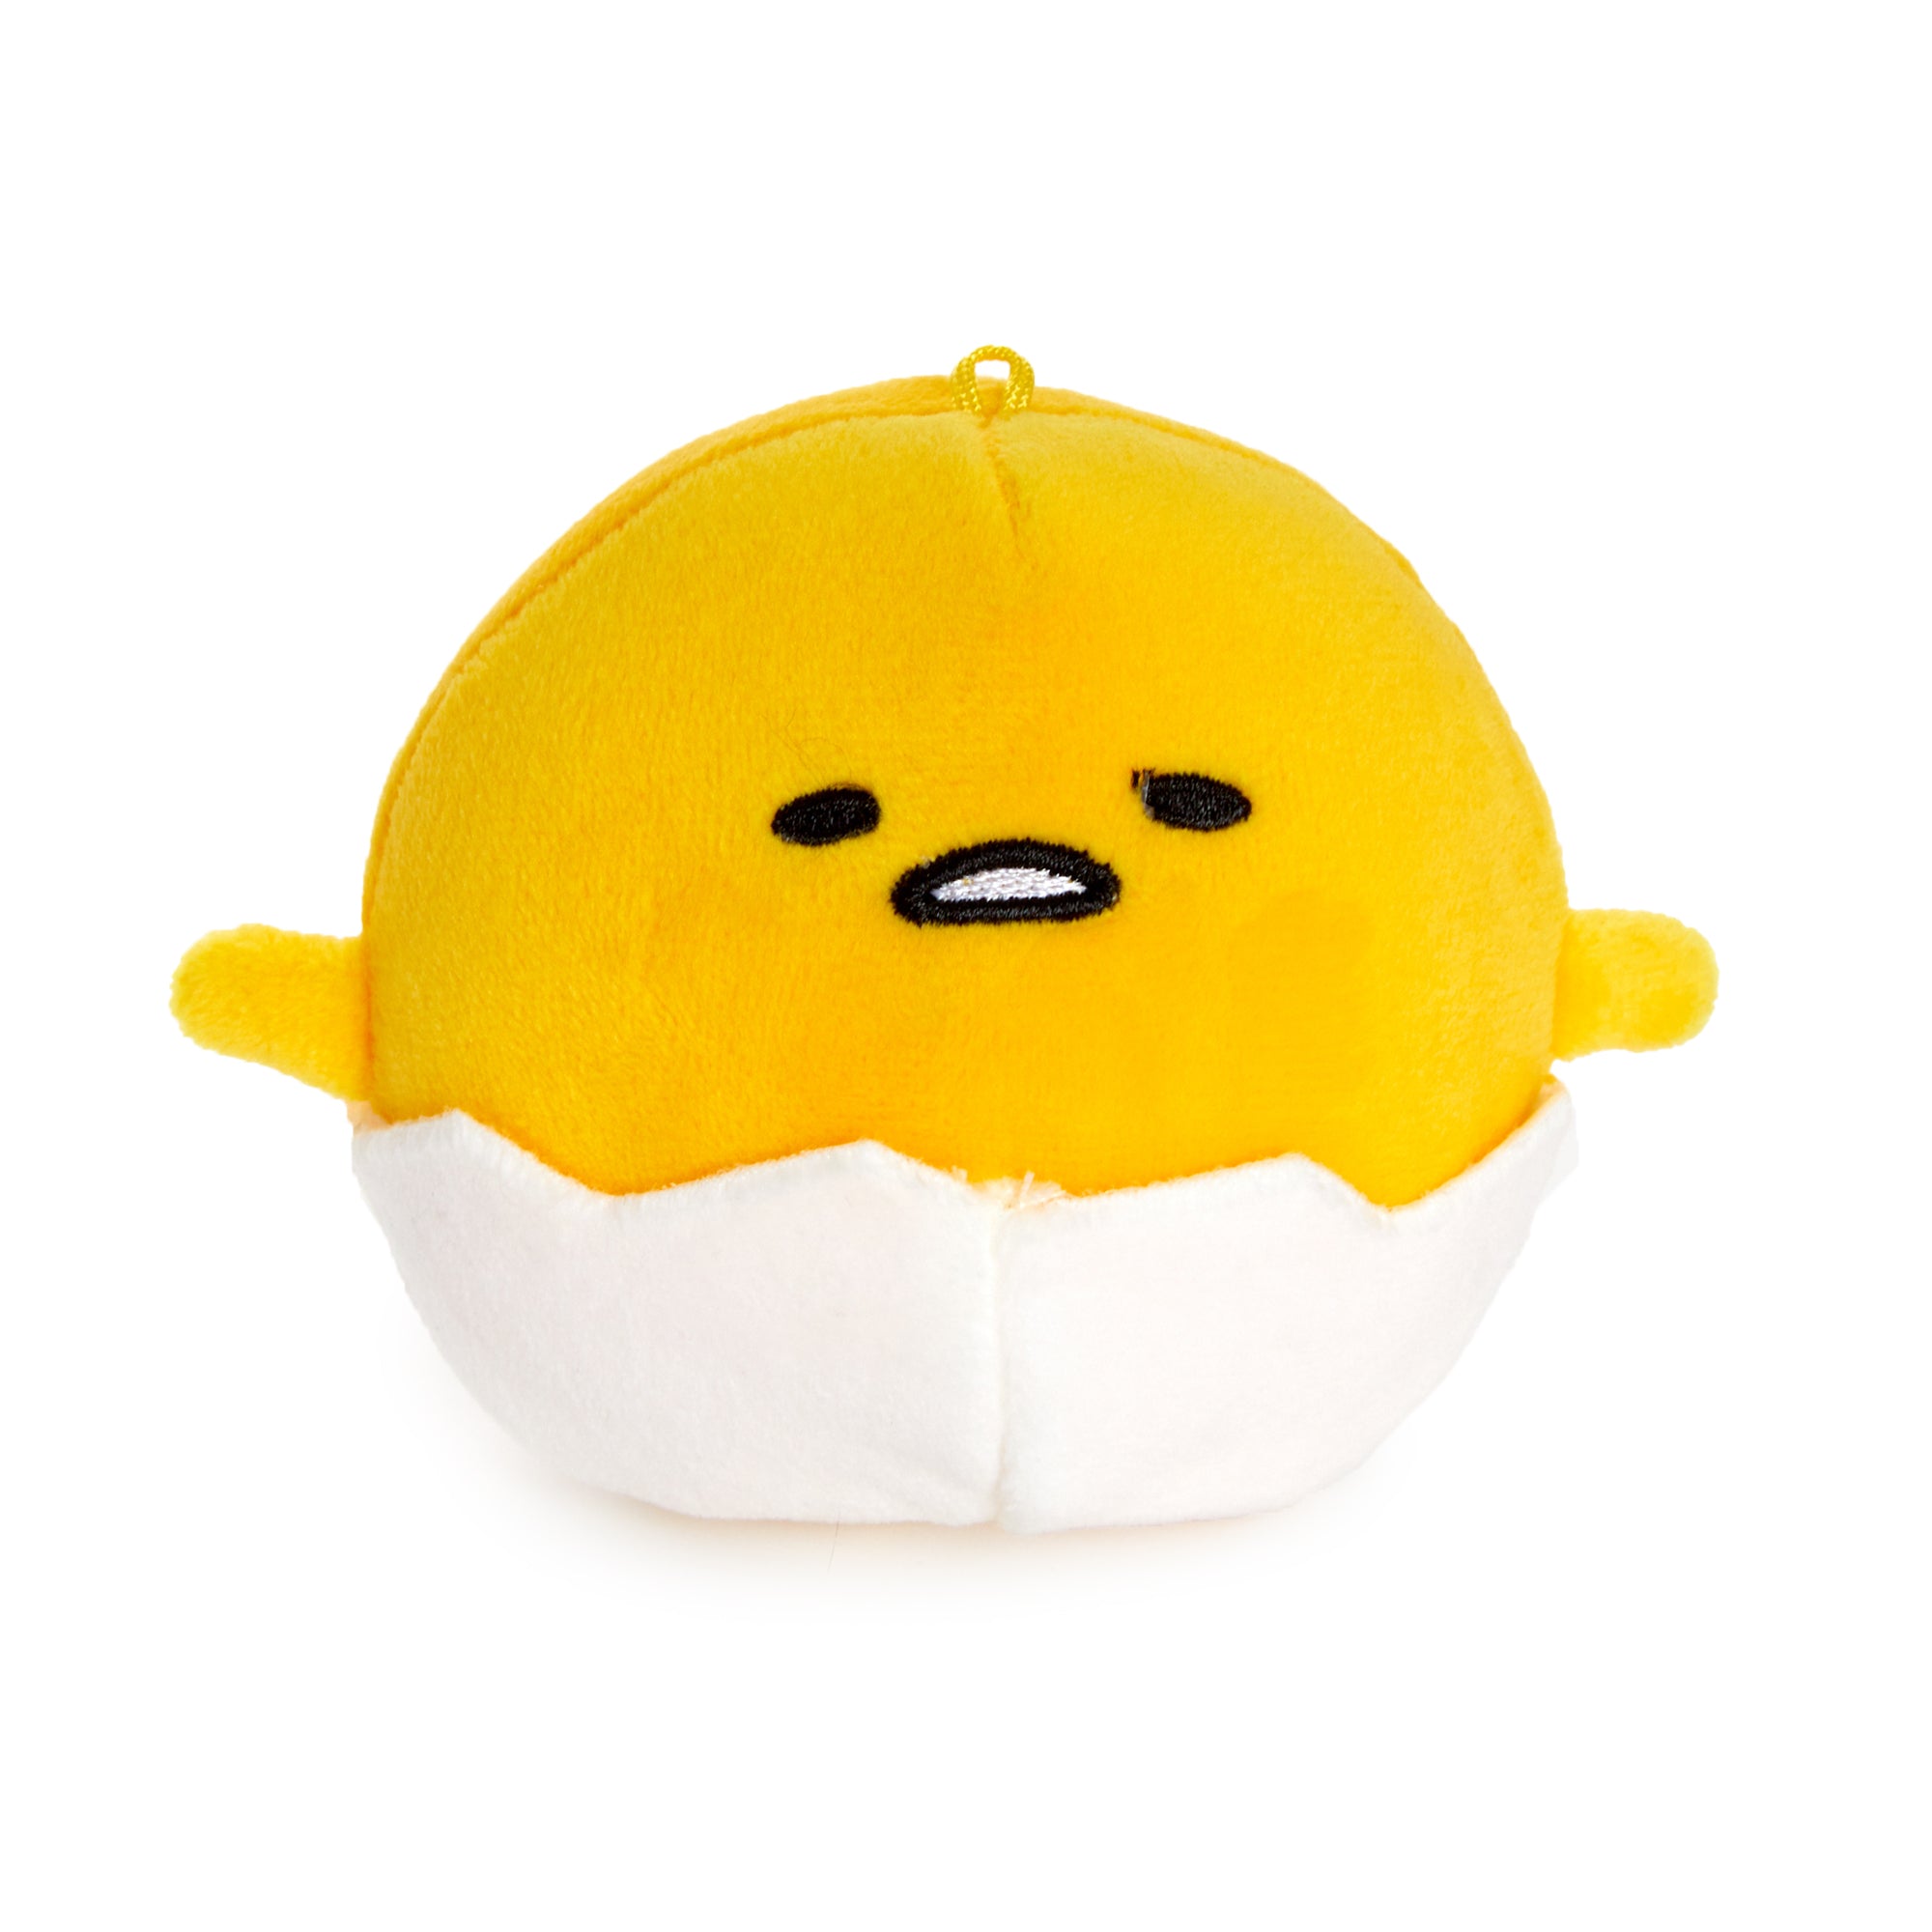 Gudetama Soft Mascot Plush Plush Japan Original   